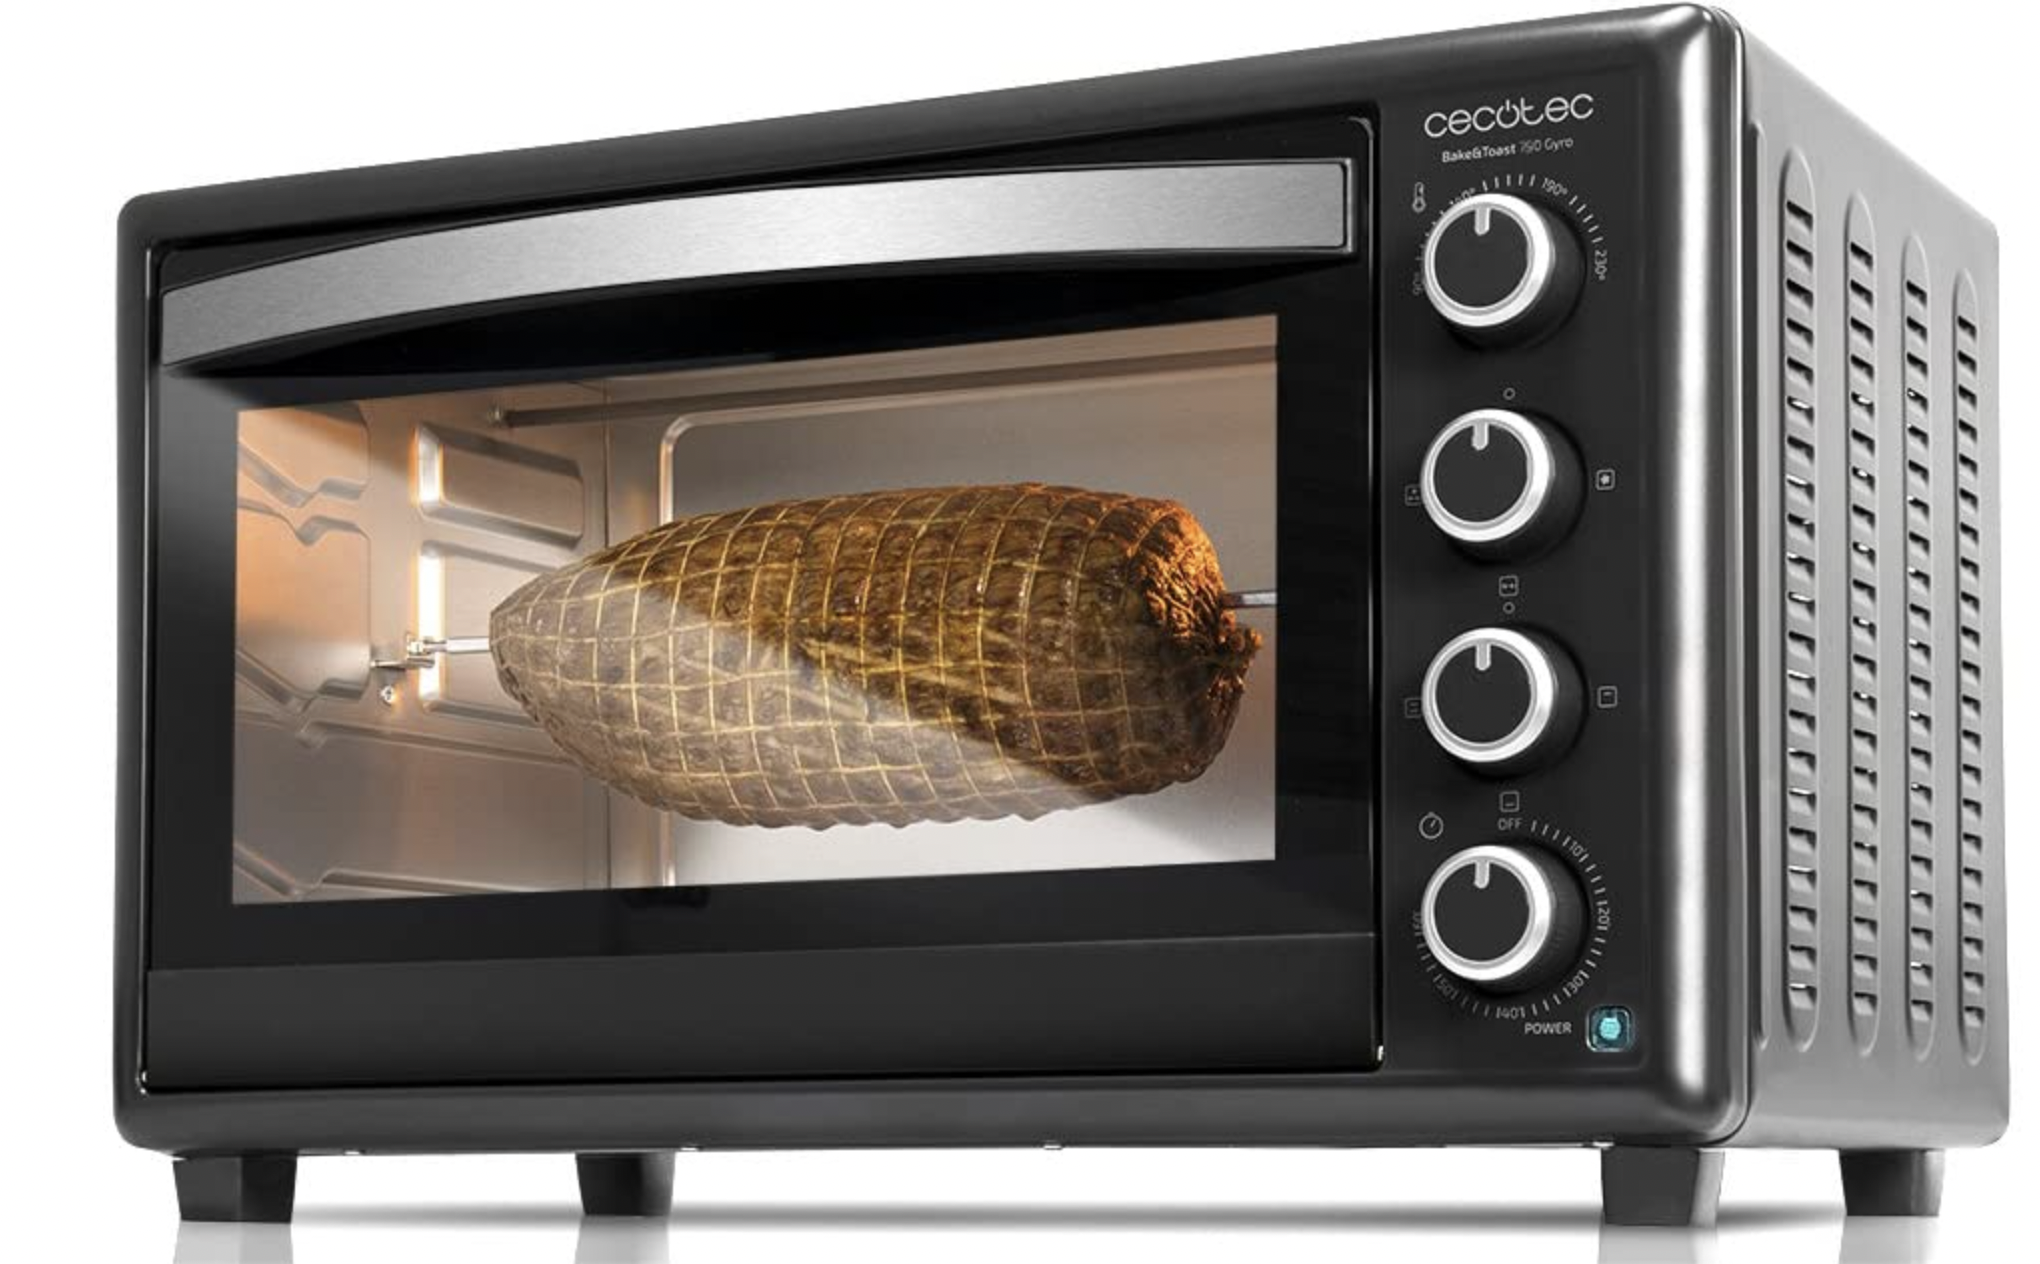 Amazon tiene en oferta un horno de sobremesa con grill y 12 funciones diferentes para cocinar.